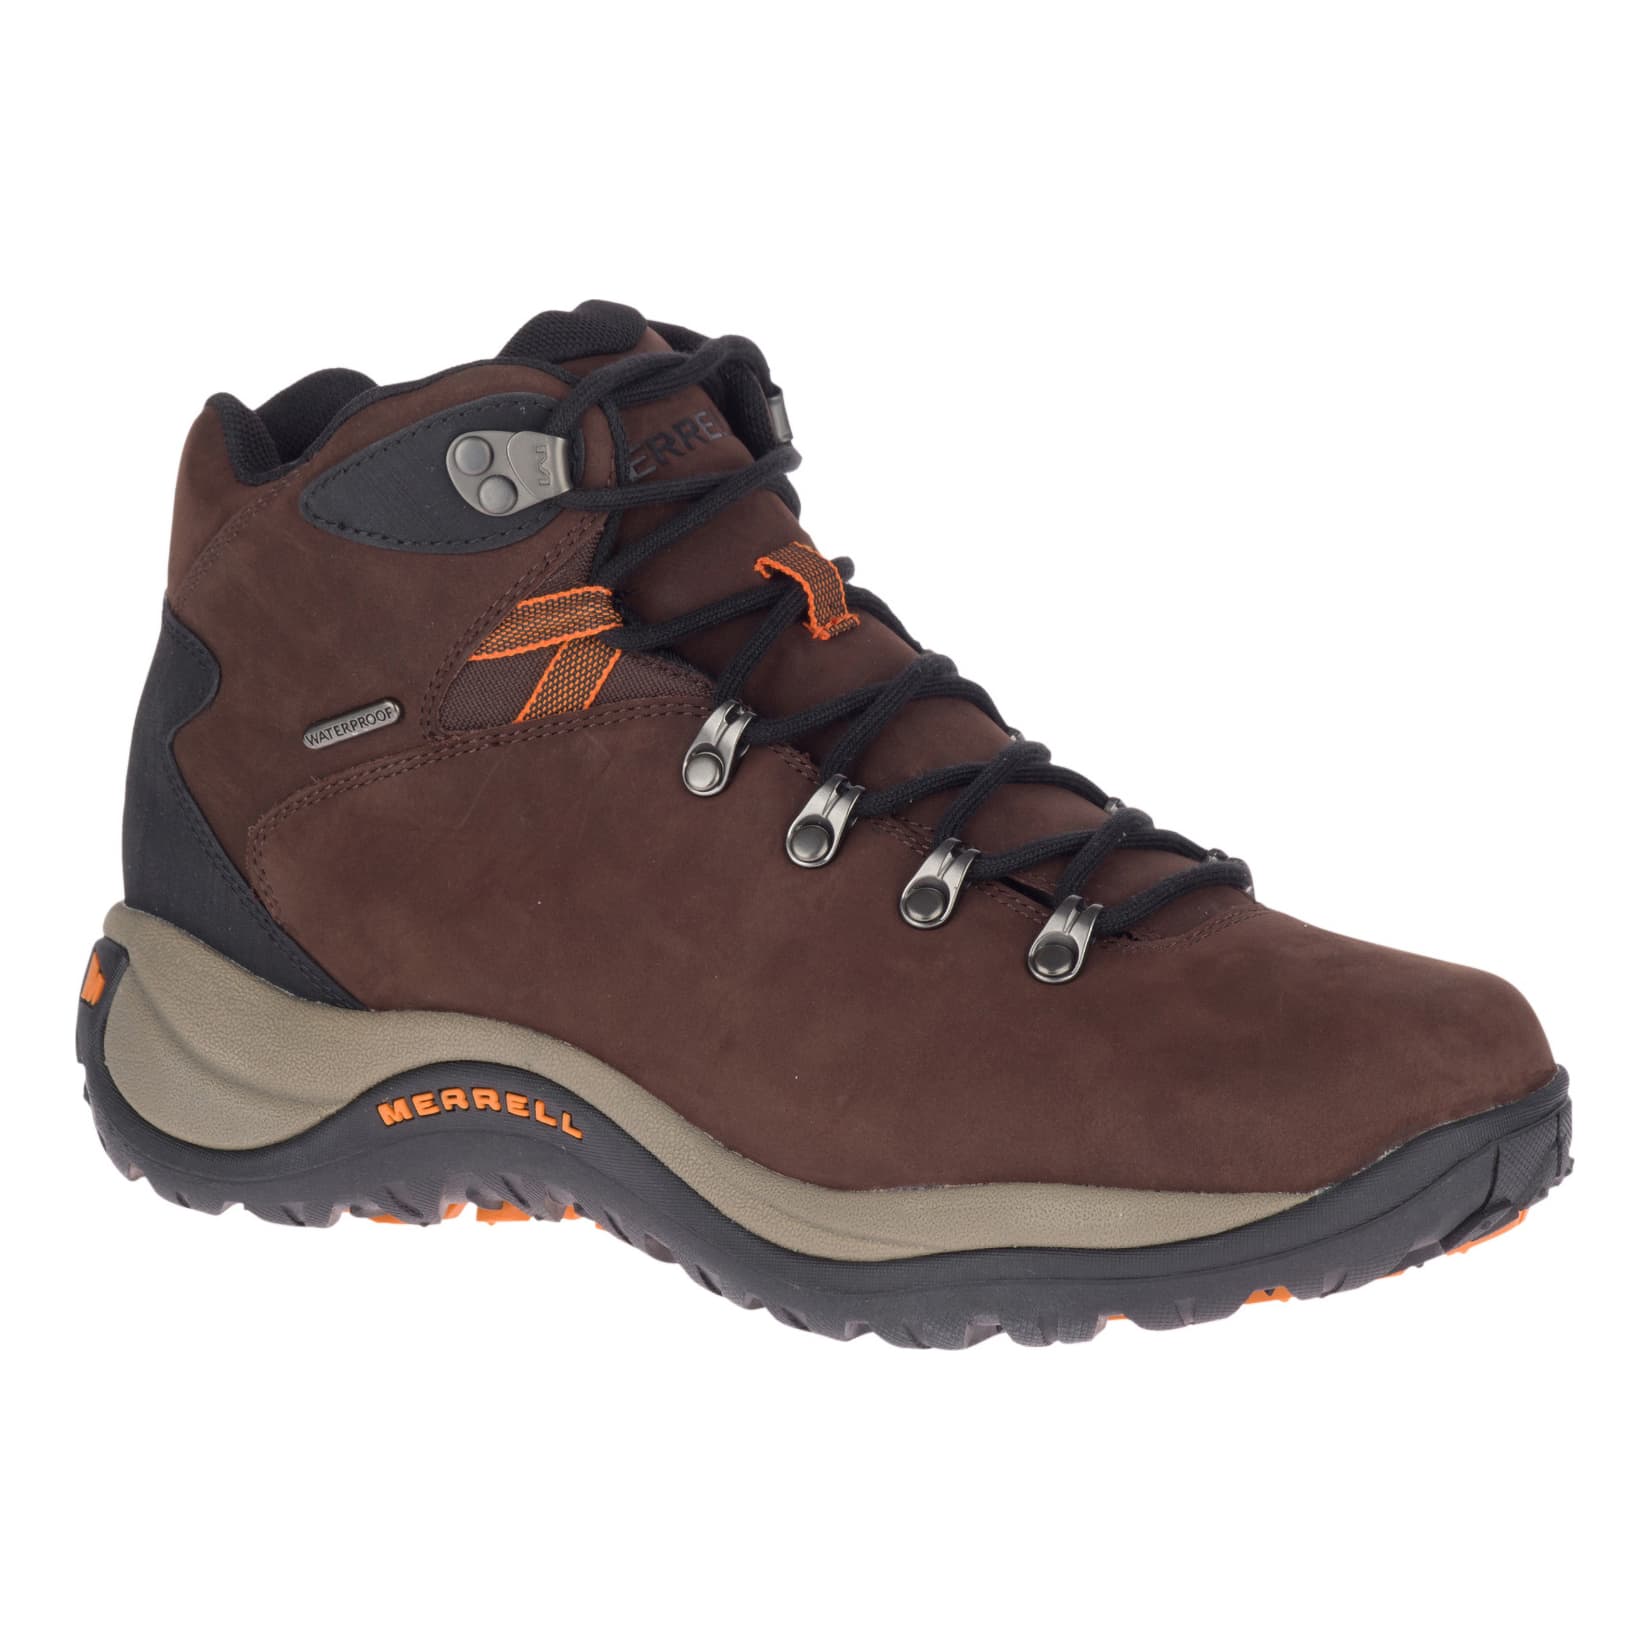 Merrell ® Men’s Reflex 4 Mid Leather Waterproof Hiker